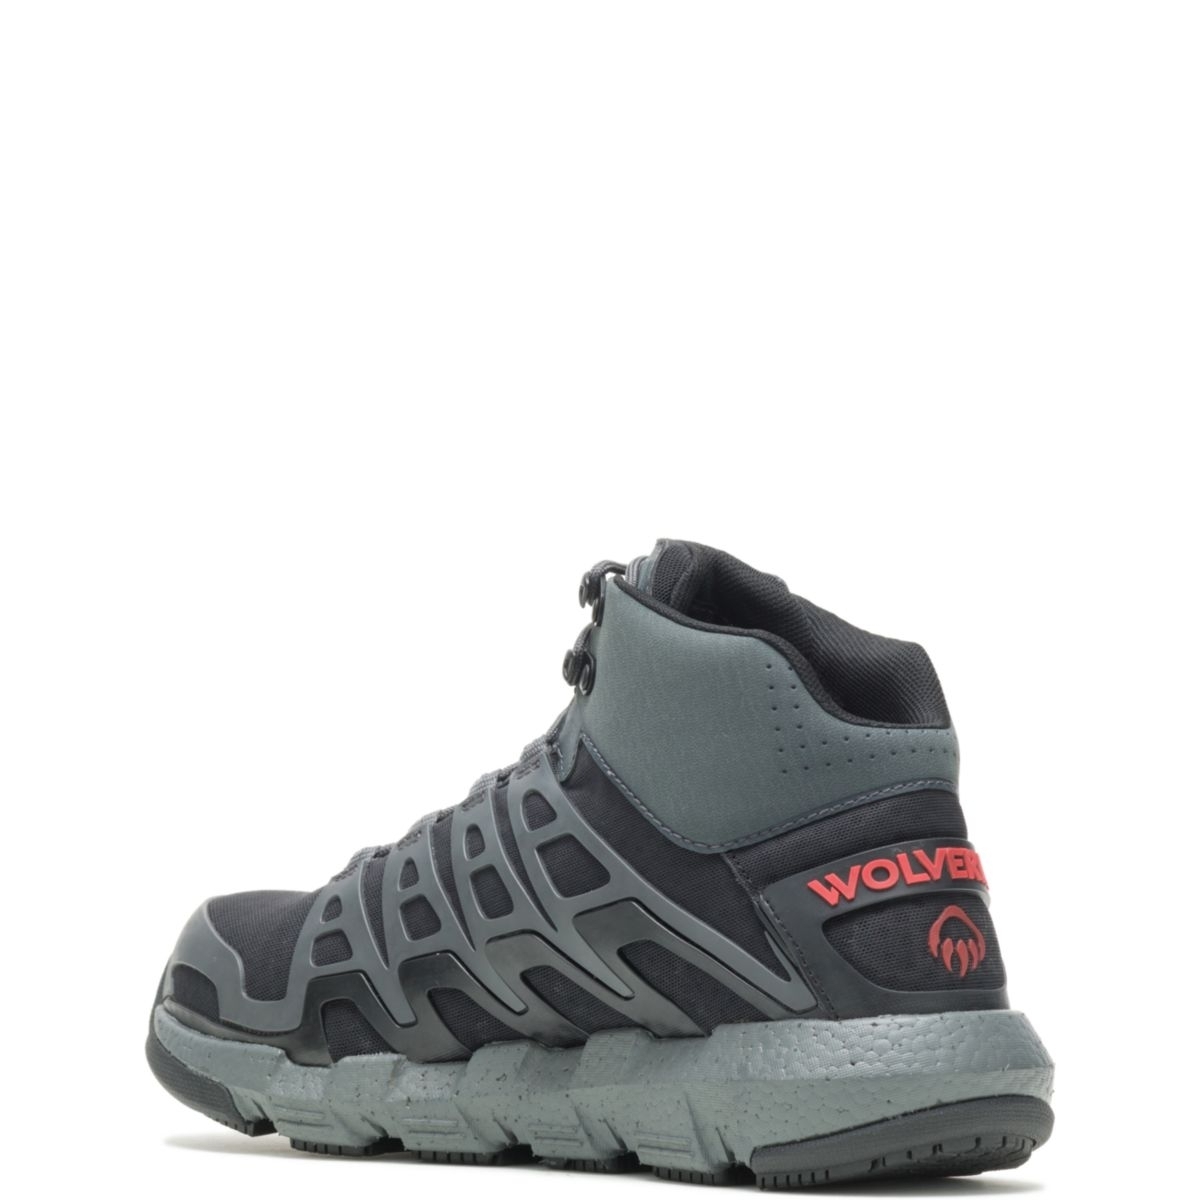 WOLVERINE Men's Rev Vent UltraSpringâ¢ DuraShocksÂ® CarbonMAXÂ® Composite Toe Work Boot Charcoal/Red - W211018 Charcoal/Red - Charcoal/Red, 9 X